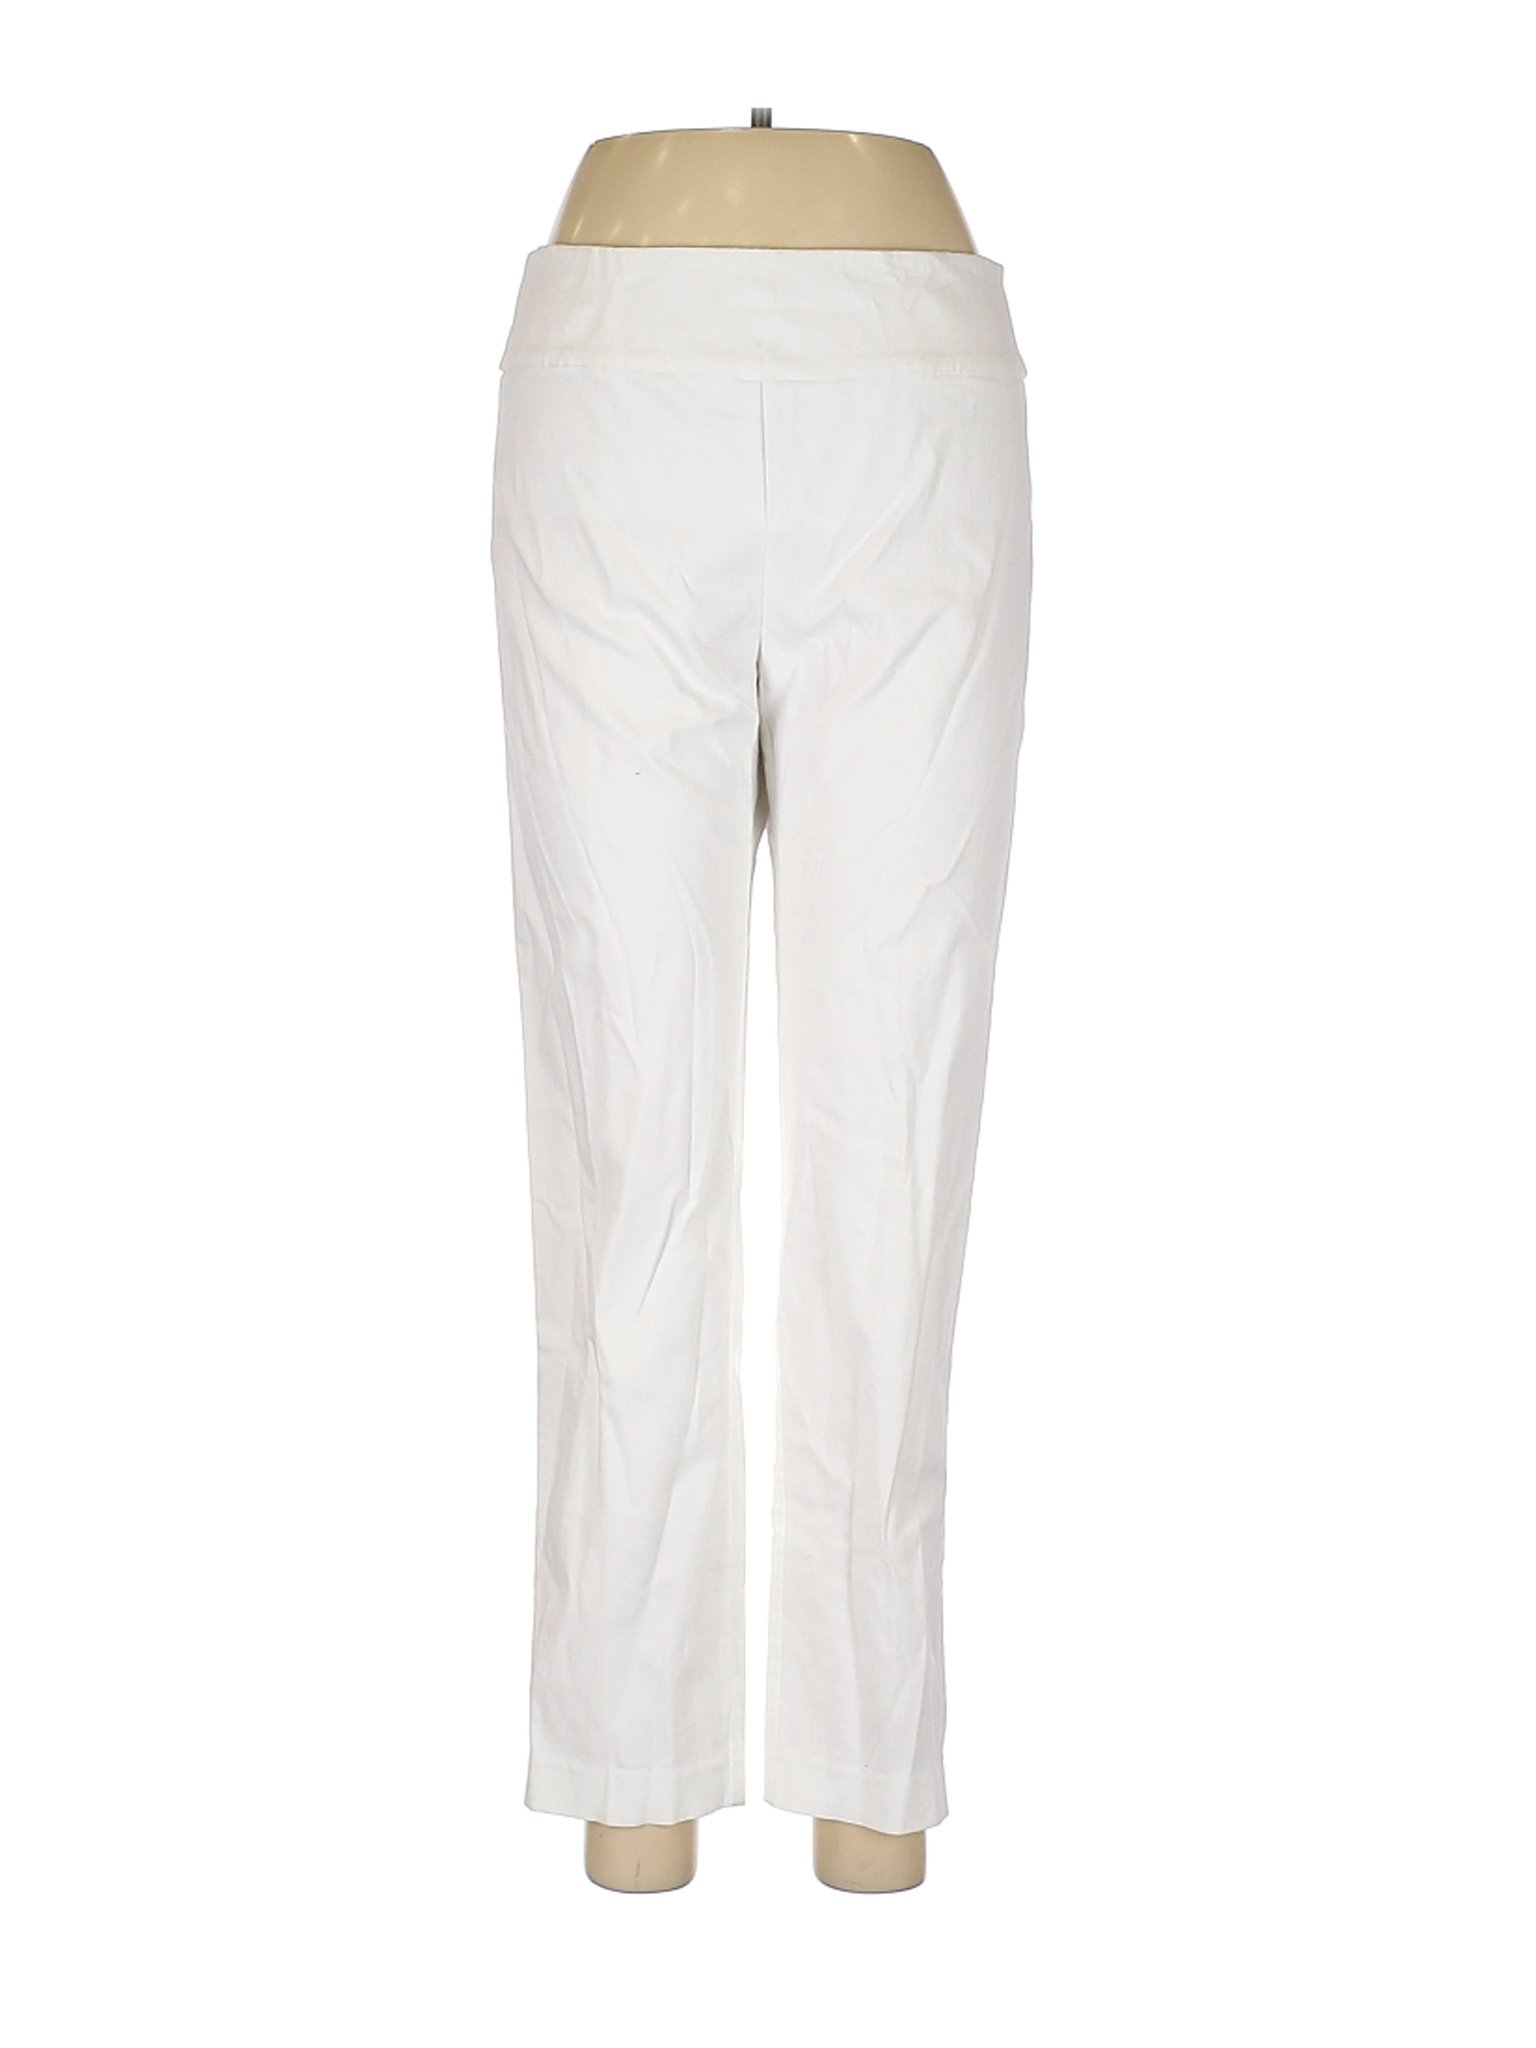 Elliott Lauren Women White Dress Pants 8 | eBay